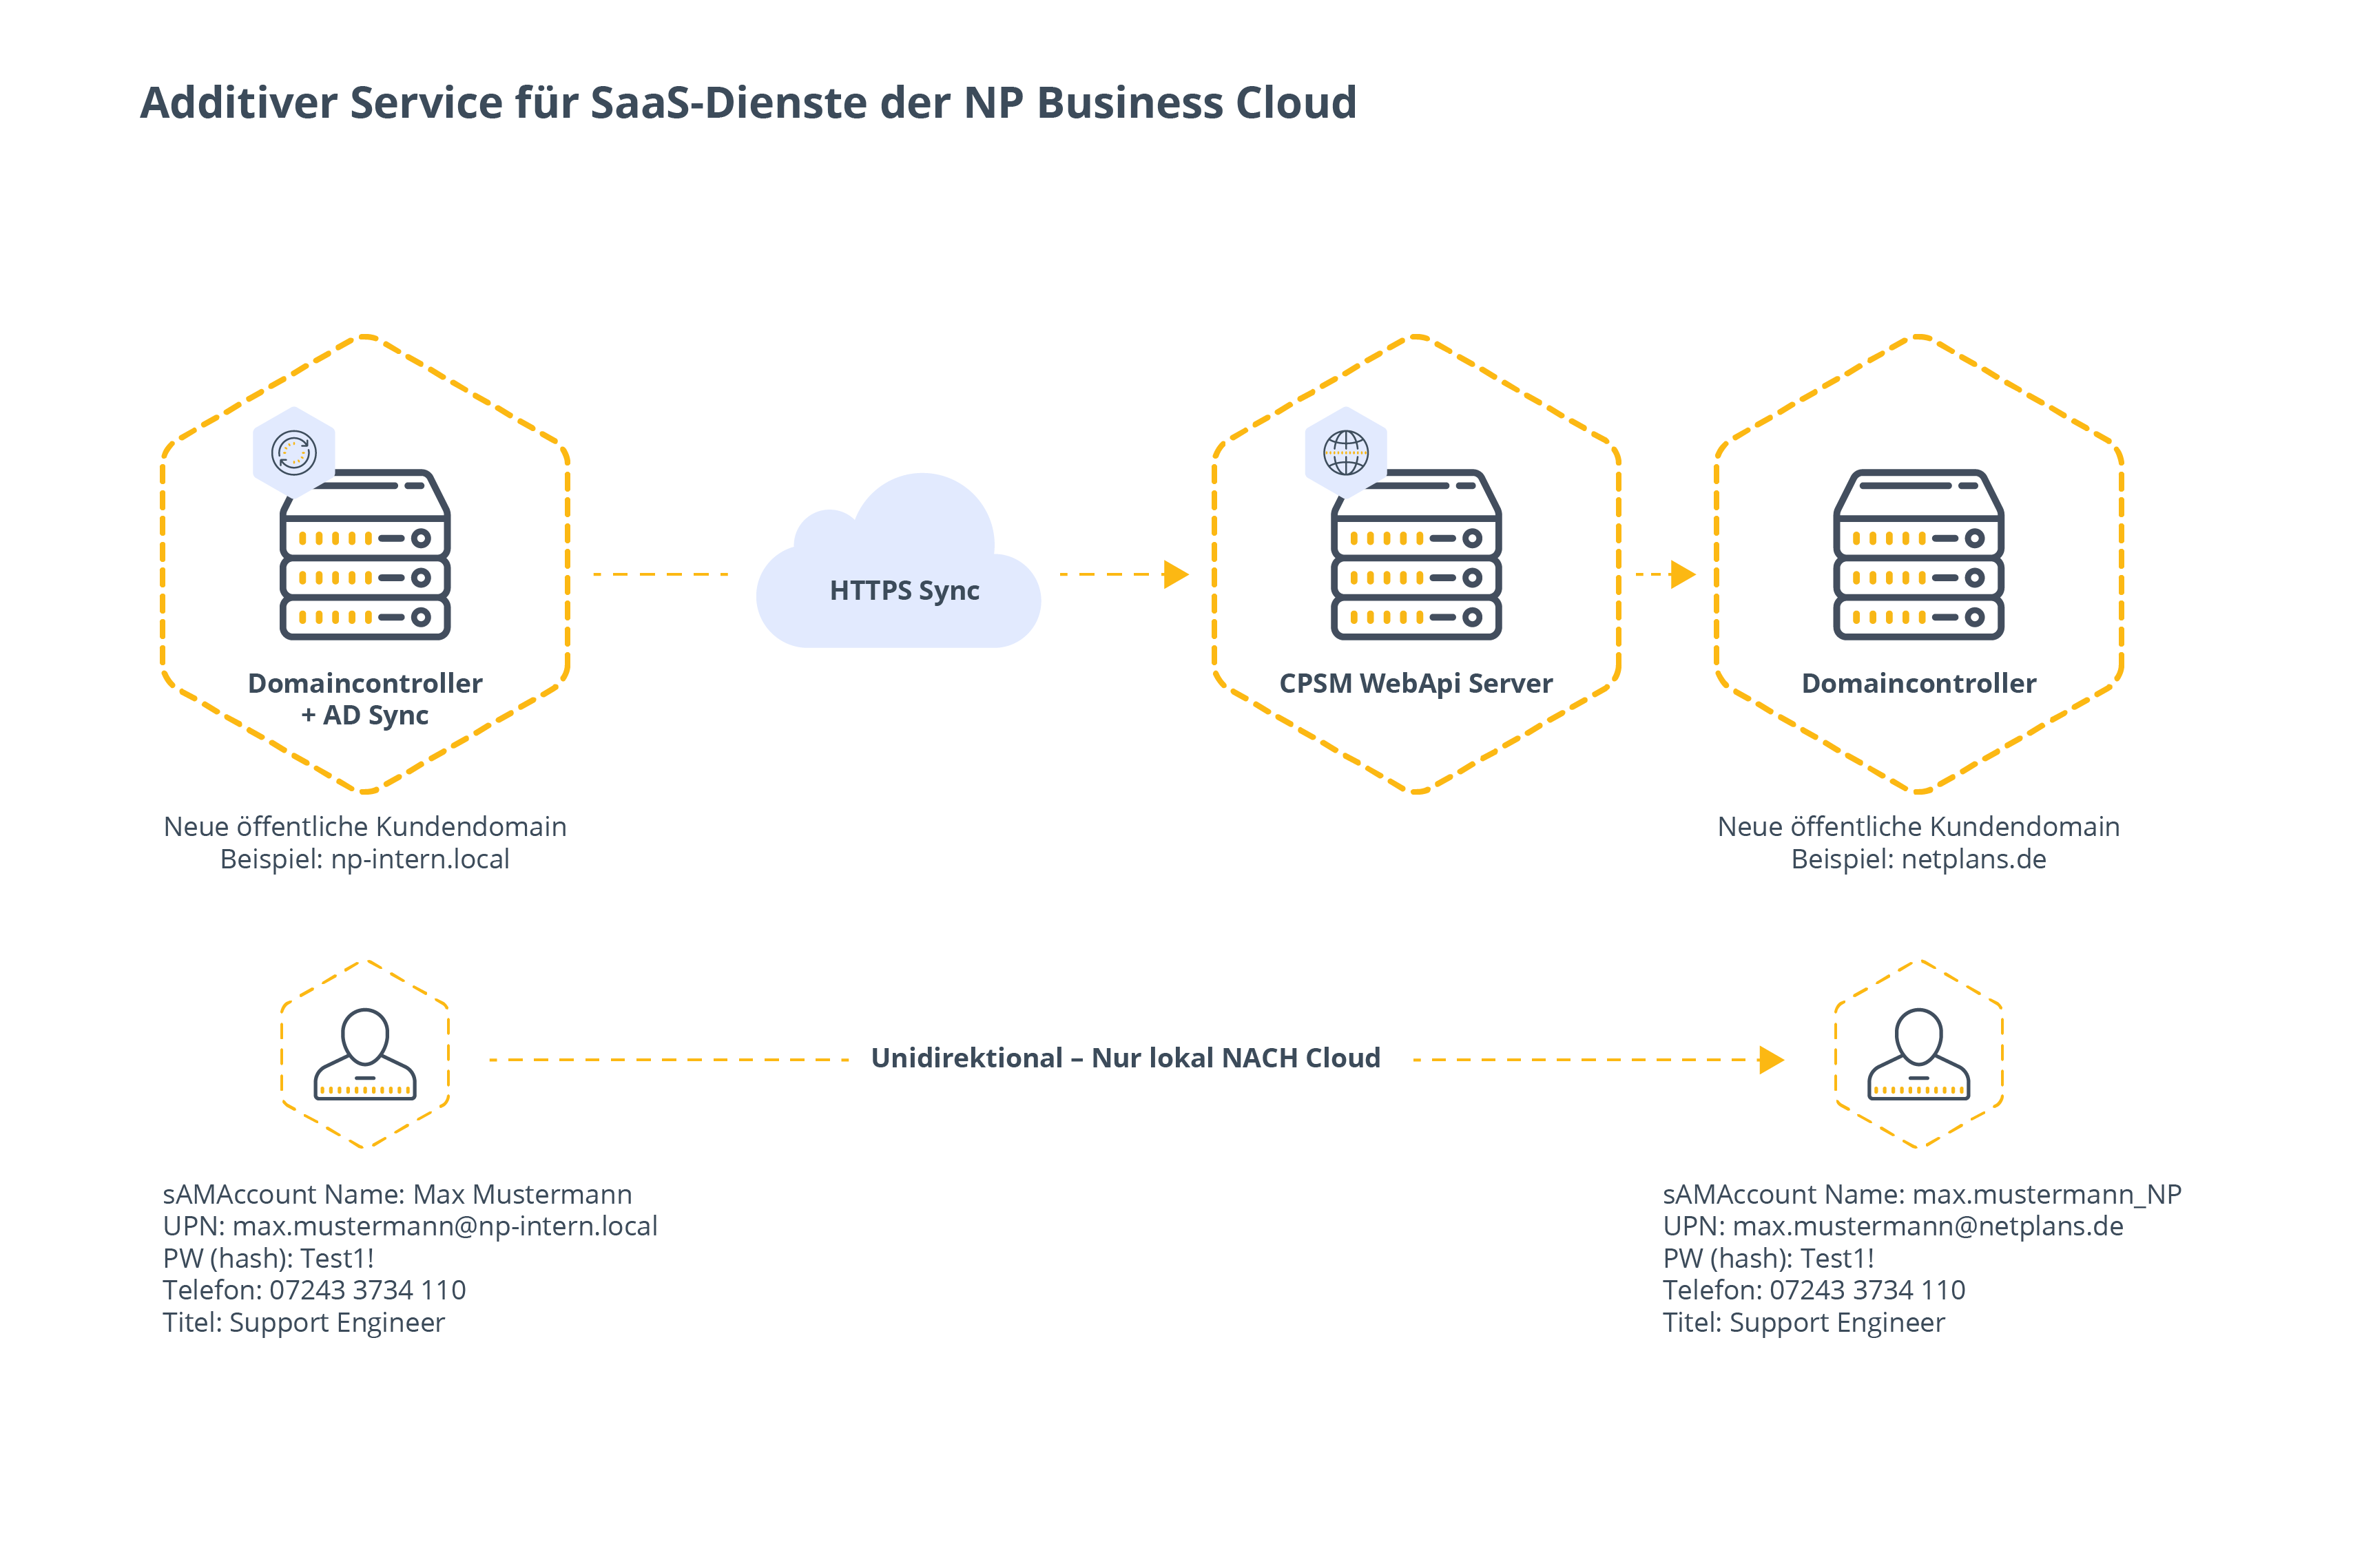 Infografik zu Managed AD Sync als additiver Service für SAAS-Dienste der NetPlans Business Cloud